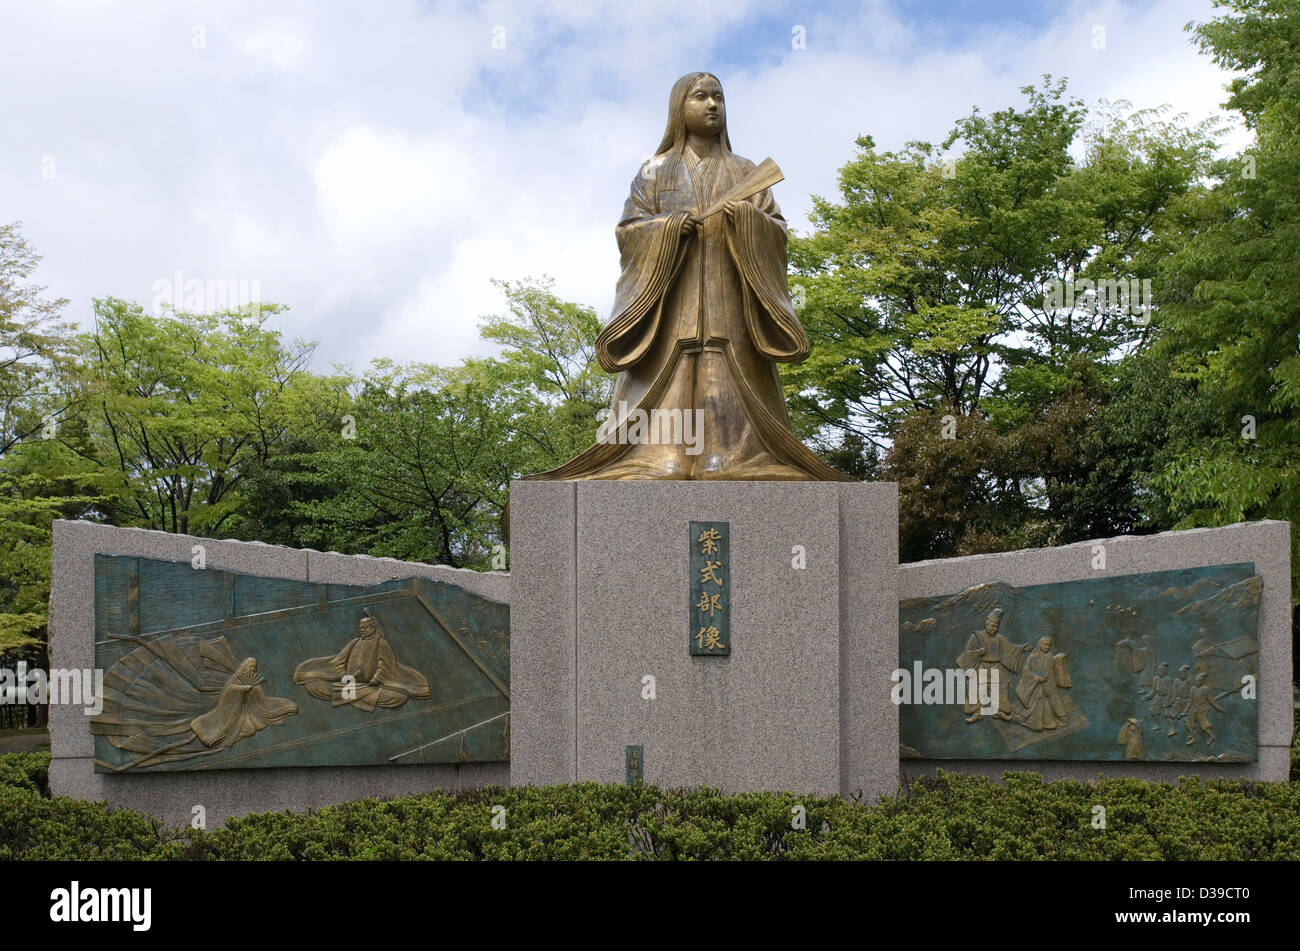 Statue von Murasaki Shikibu in einem Park in Fukui, japanischer Dichter und Schriftsteller, die Geschichte vom Prinzen Genji schrieb. Stockfoto